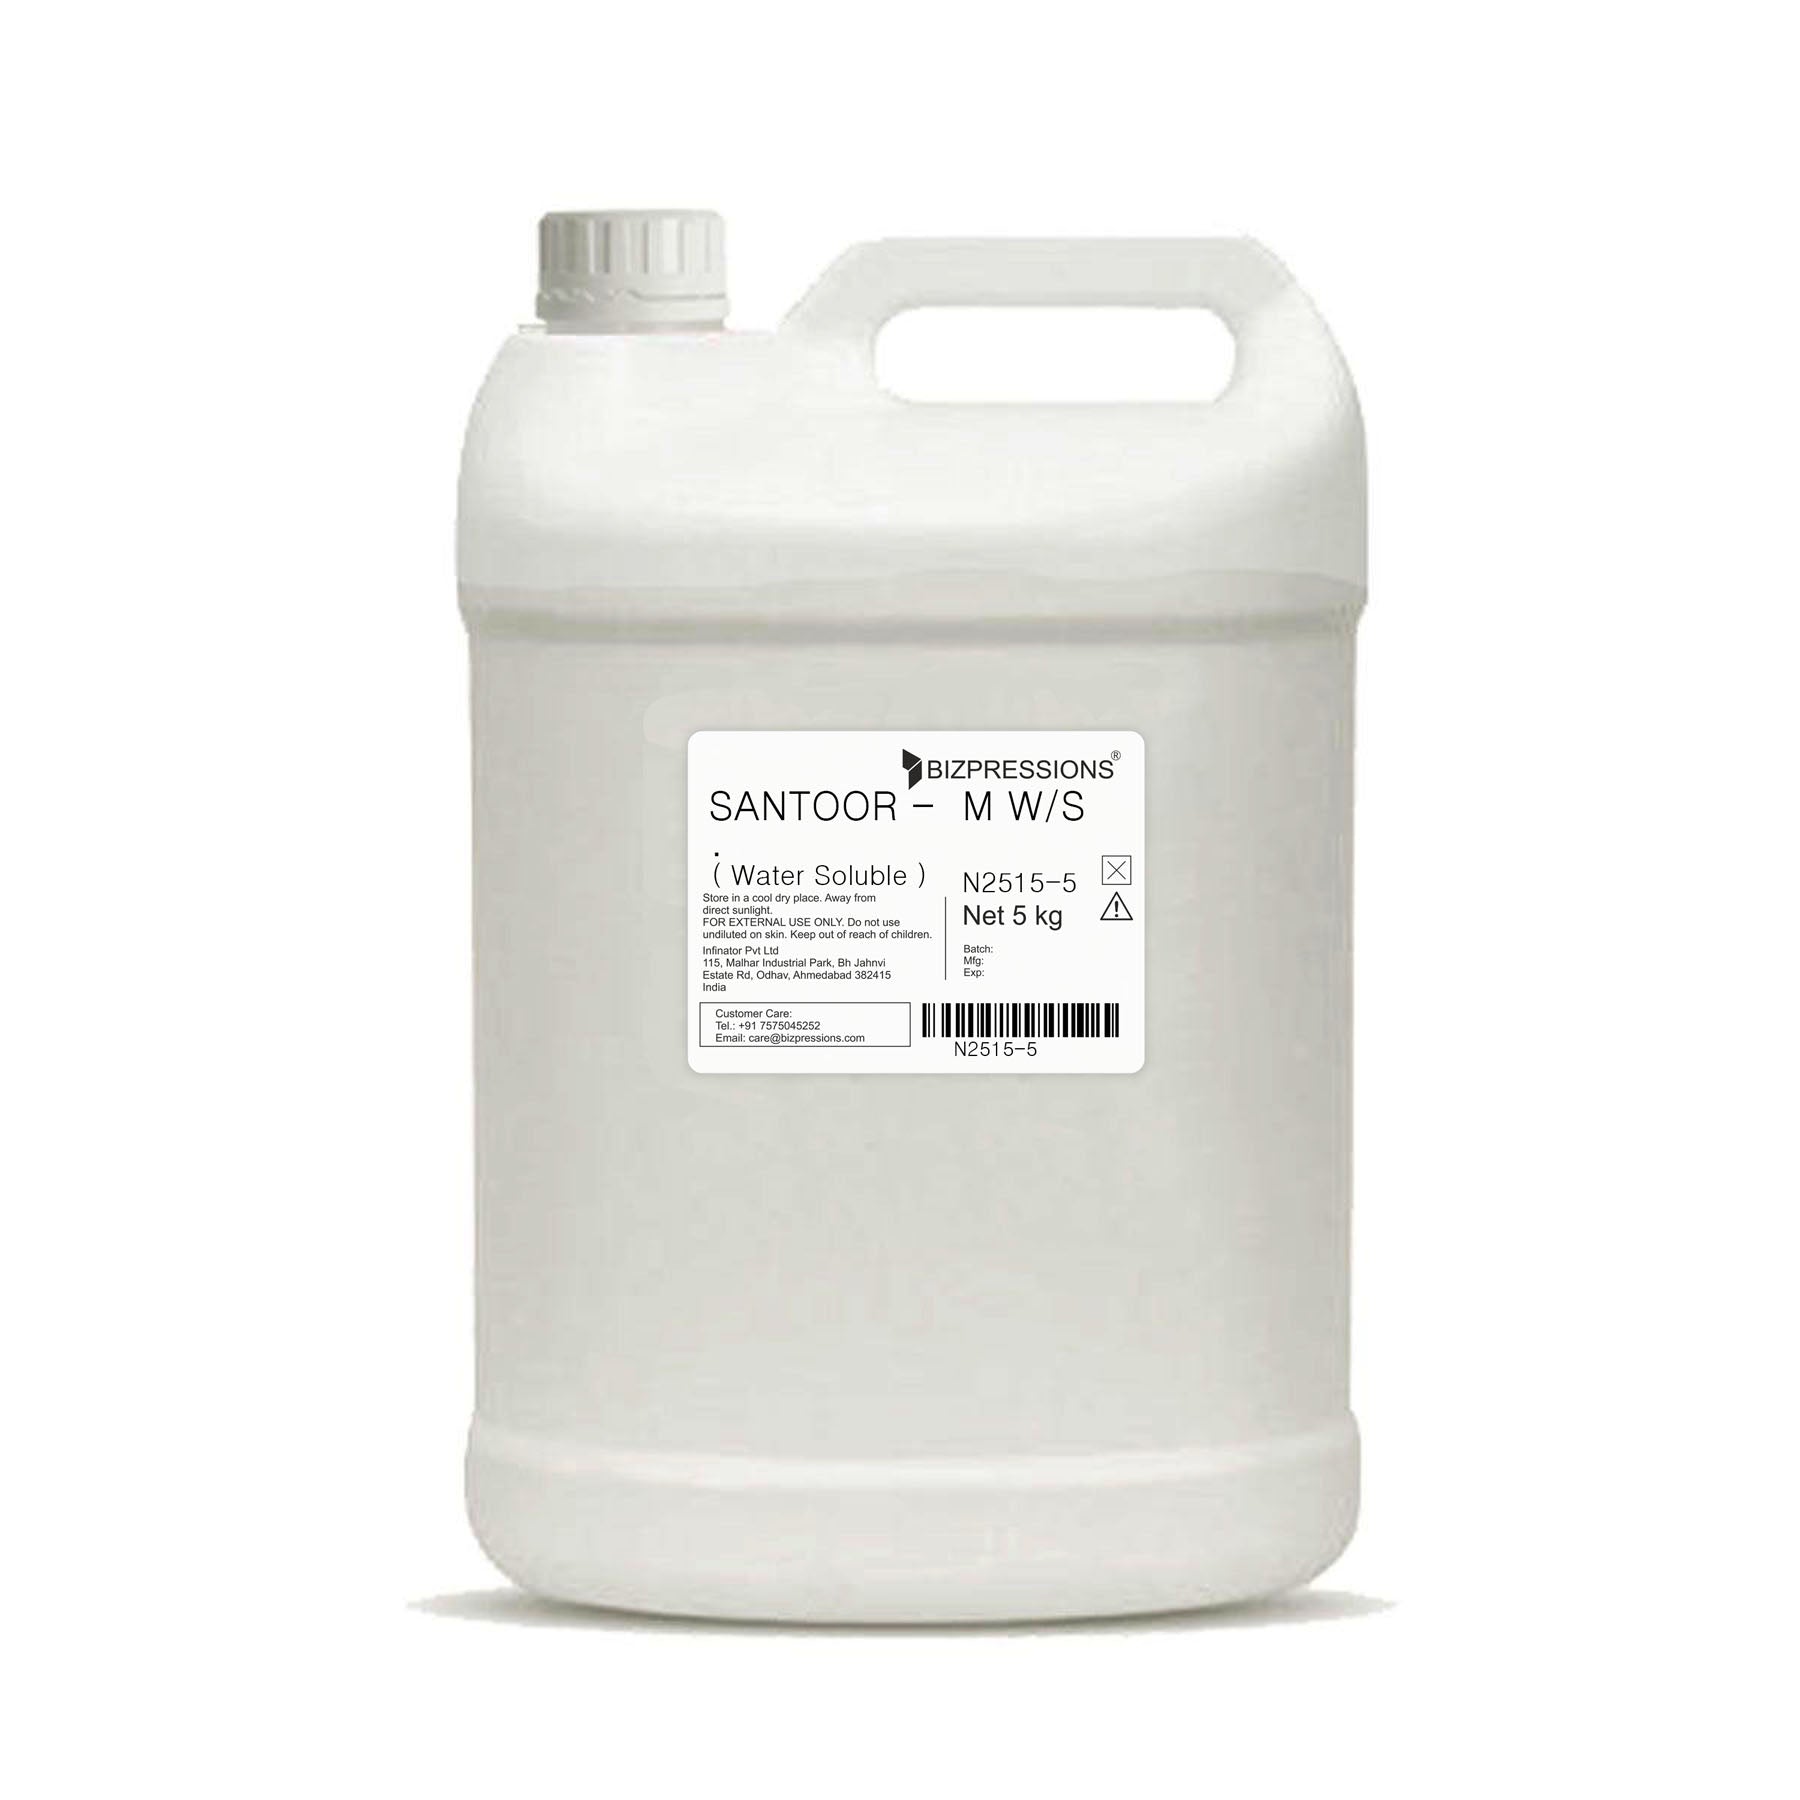 SANTOOR - M W/S - Fragrance ( Water Soluble ) - 5 kg